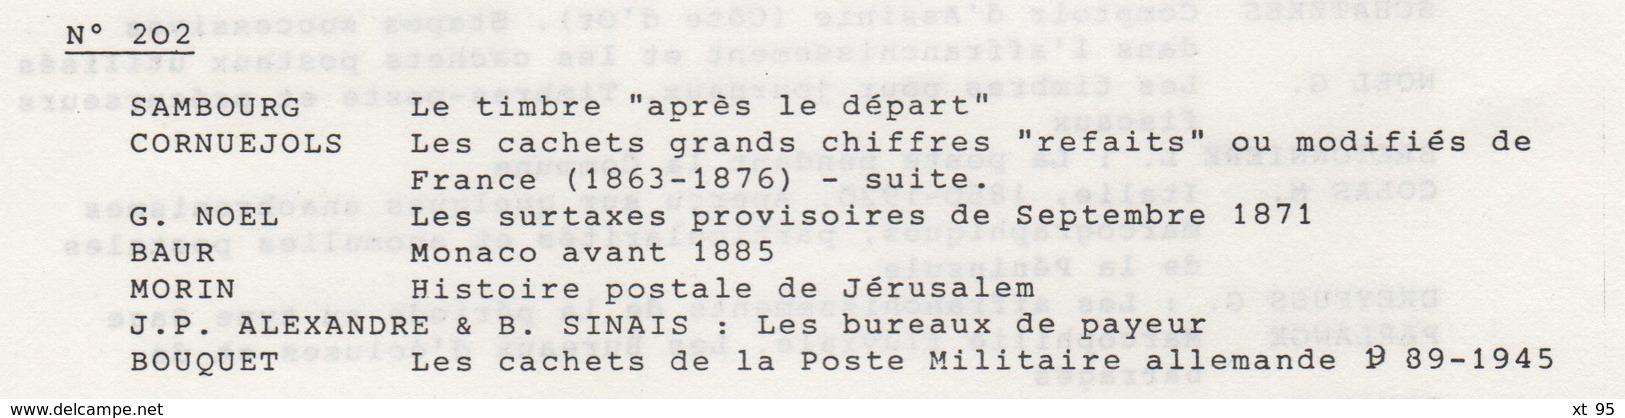 Les Feuilles Marcophiles - N°202 - Voir Sommaire - Frais De Port 2€ - Philatélie Et Histoire Postale